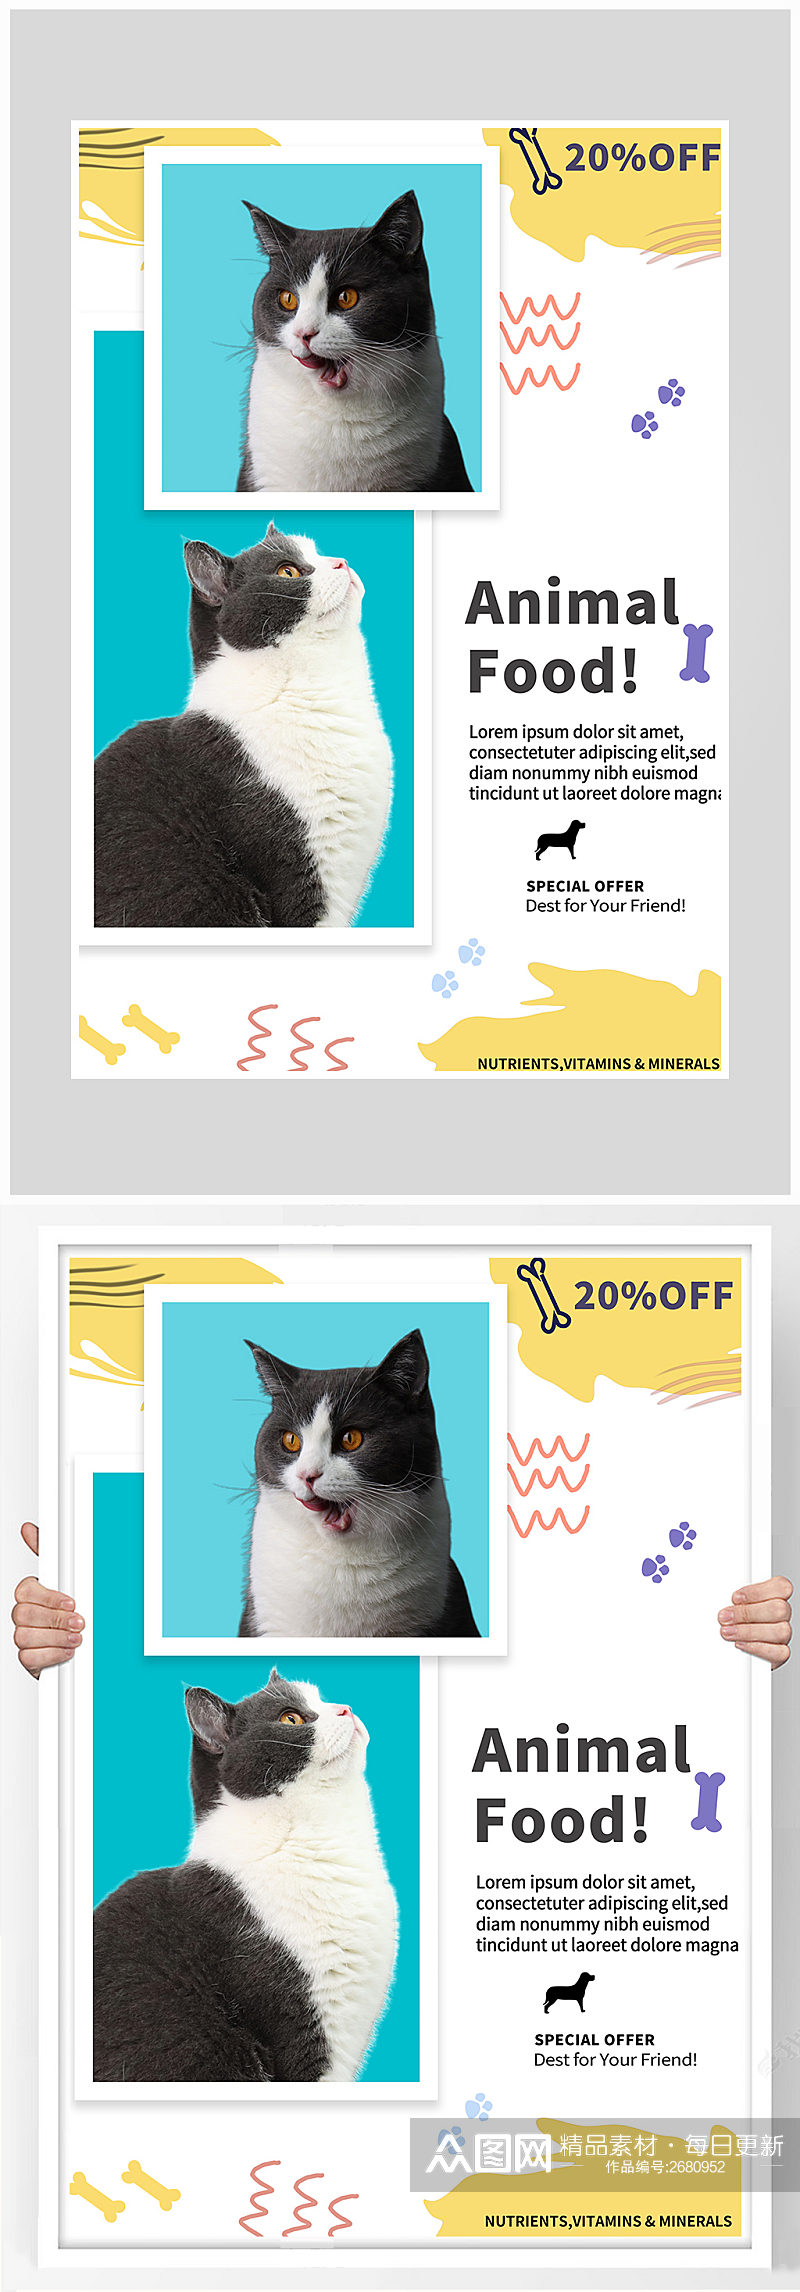 简约卡通小猫宠物店海报设计素材